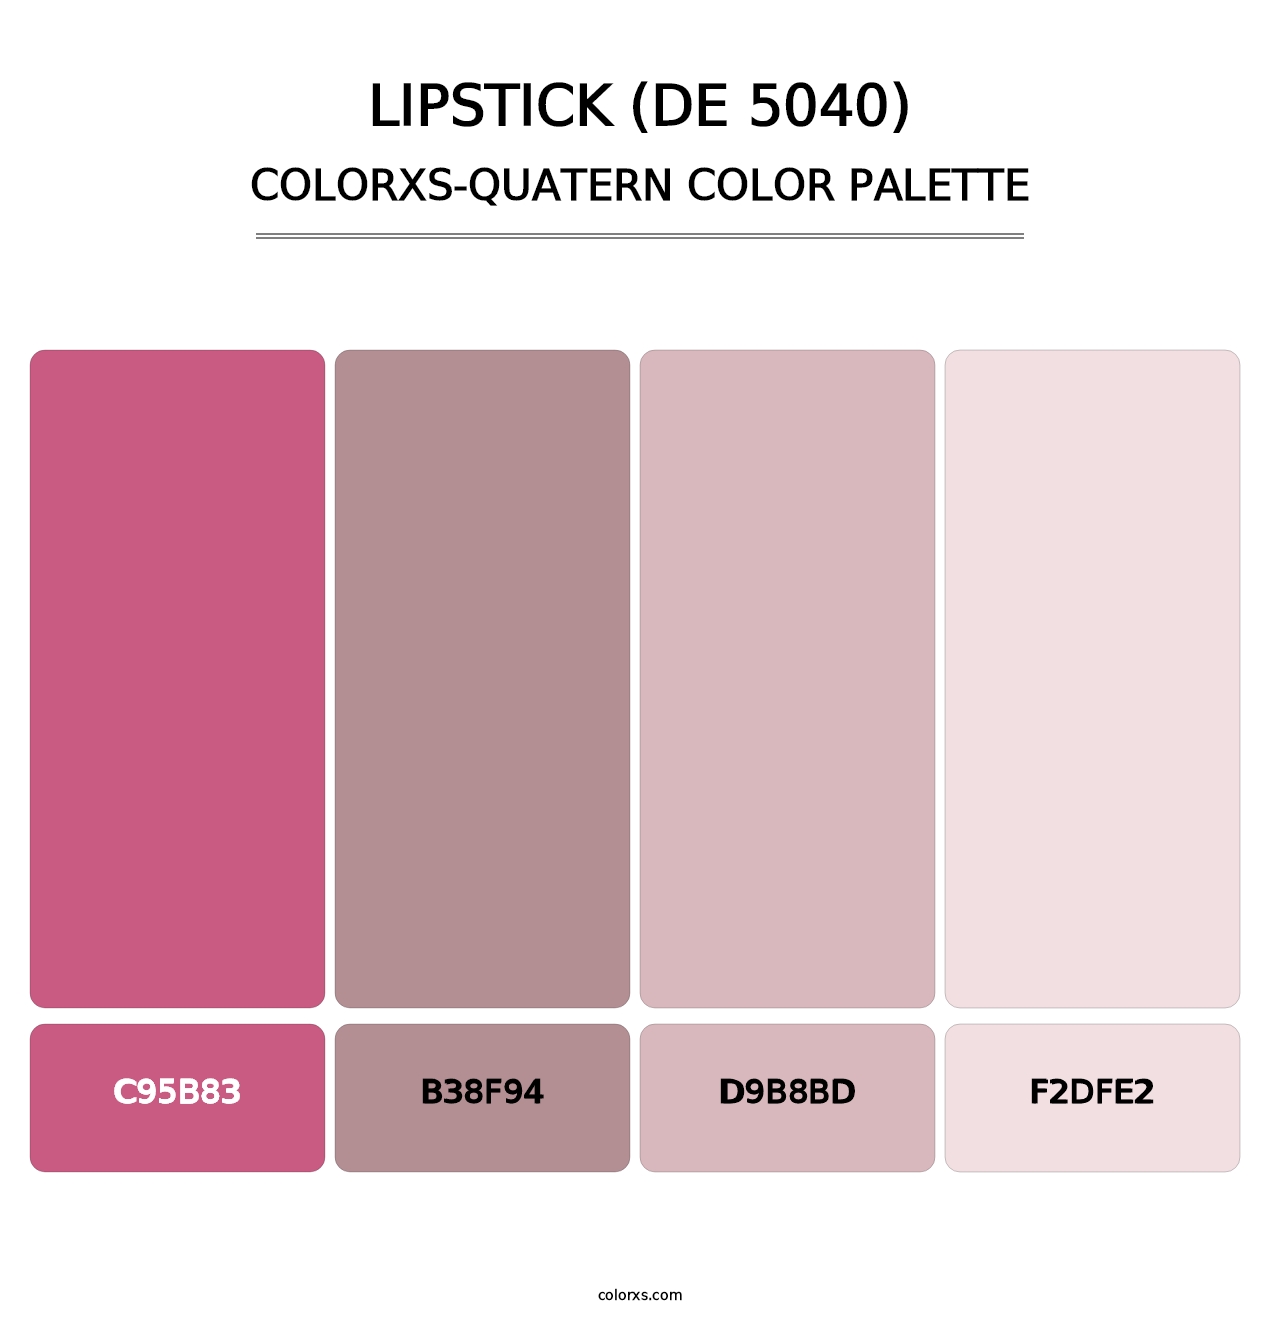 Lipstick (DE 5040) - Colorxs Quatern Palette